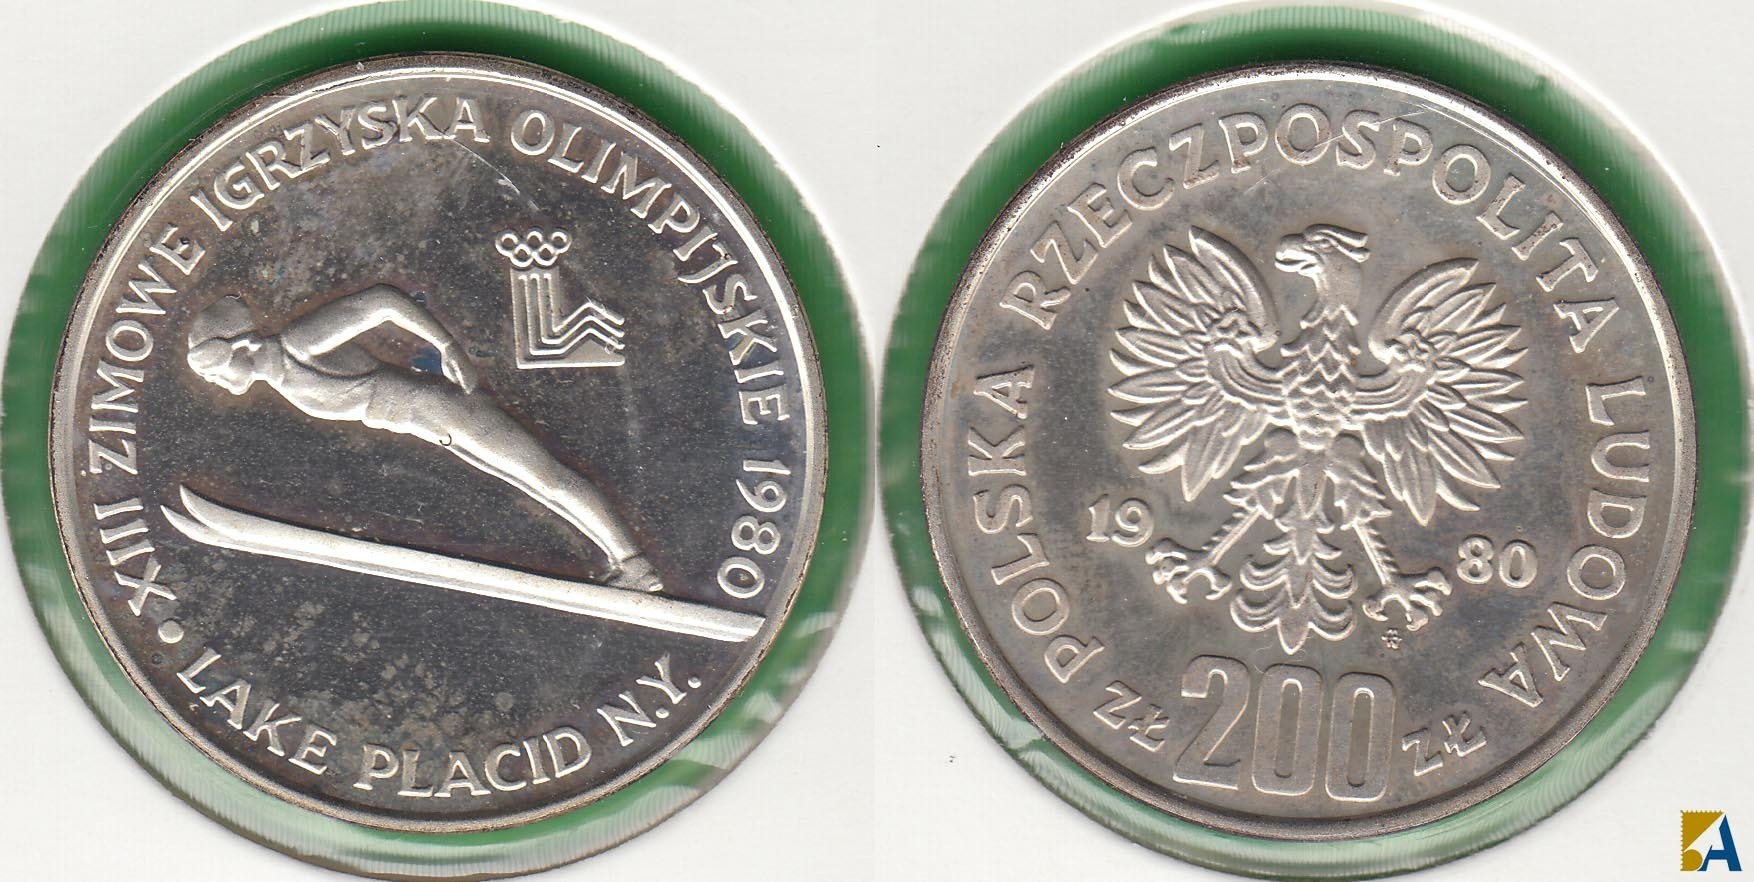 POLONIA - POLSKA. 200 ZLOTYCH DE 1980. PLATA 0.750. (2)